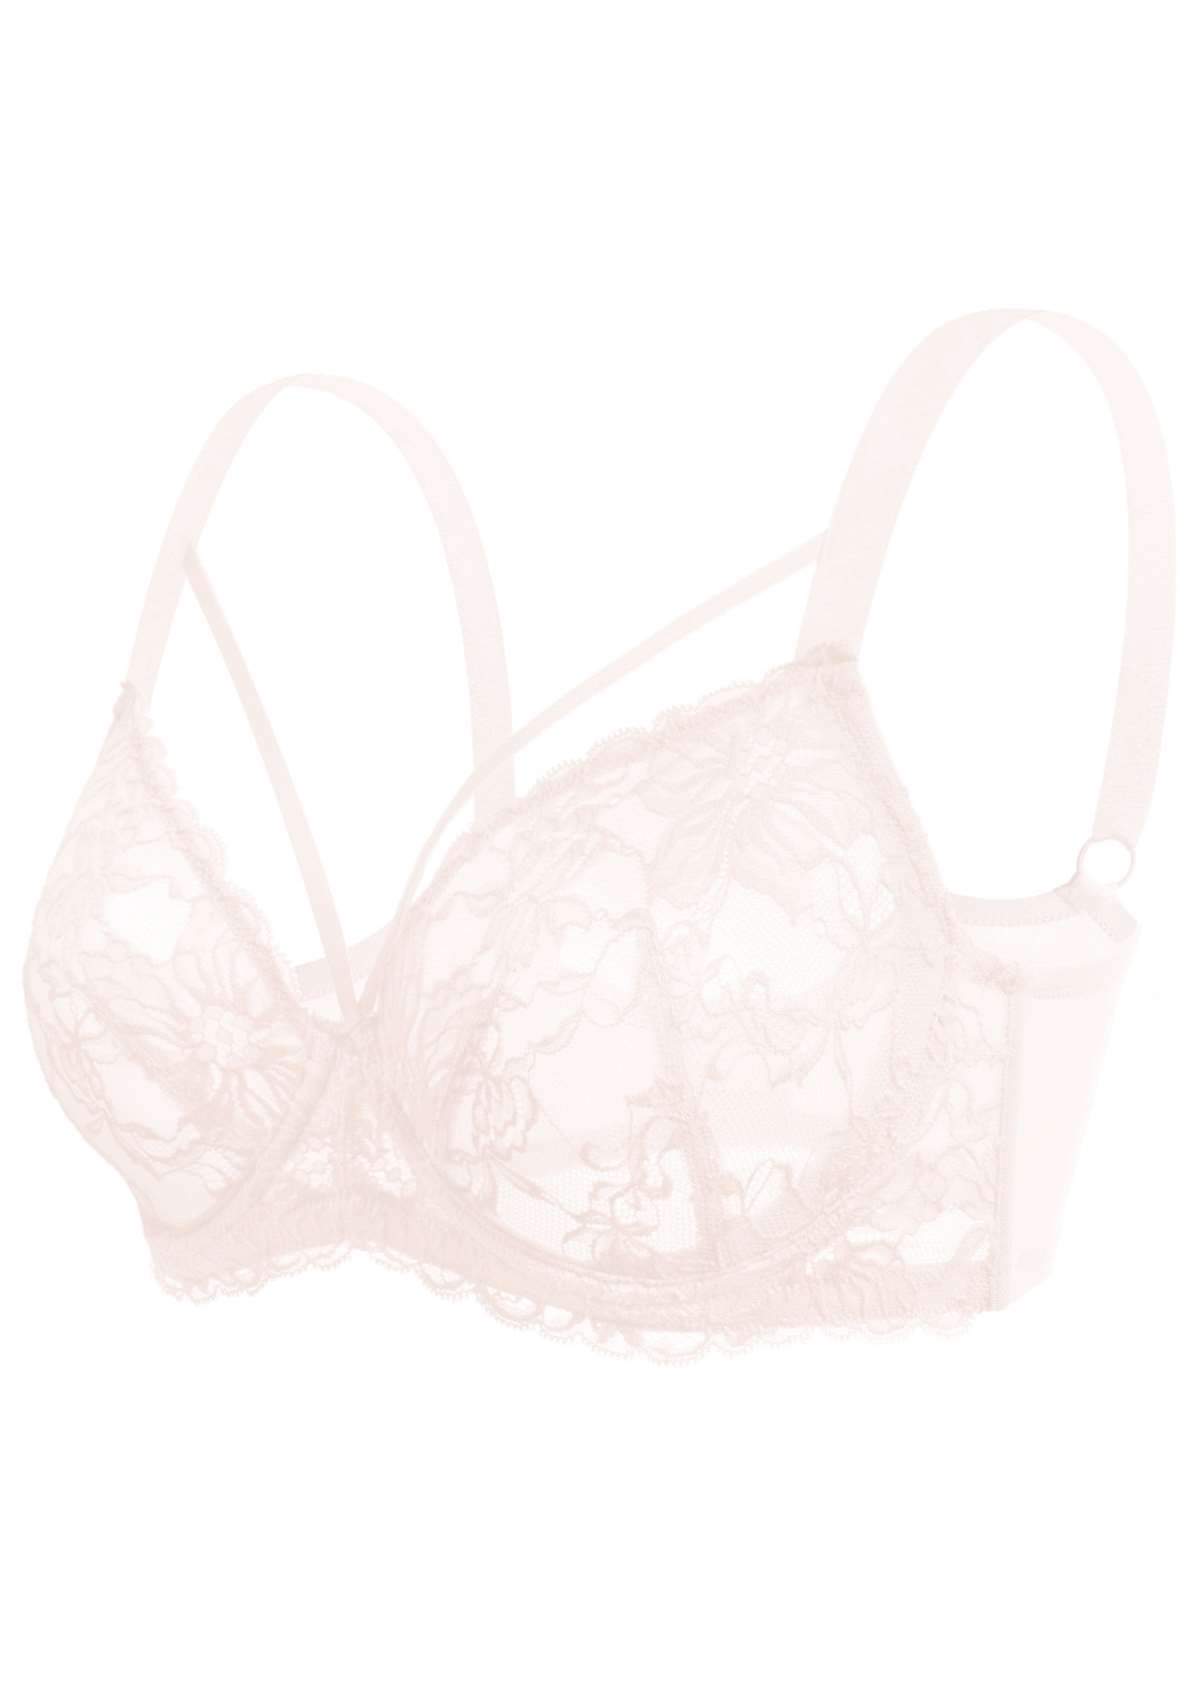 HSIA Pretty In Petals Underwire Lace Bra: No Padding, Full Cup Bra - Dusty Peach / 40 / C